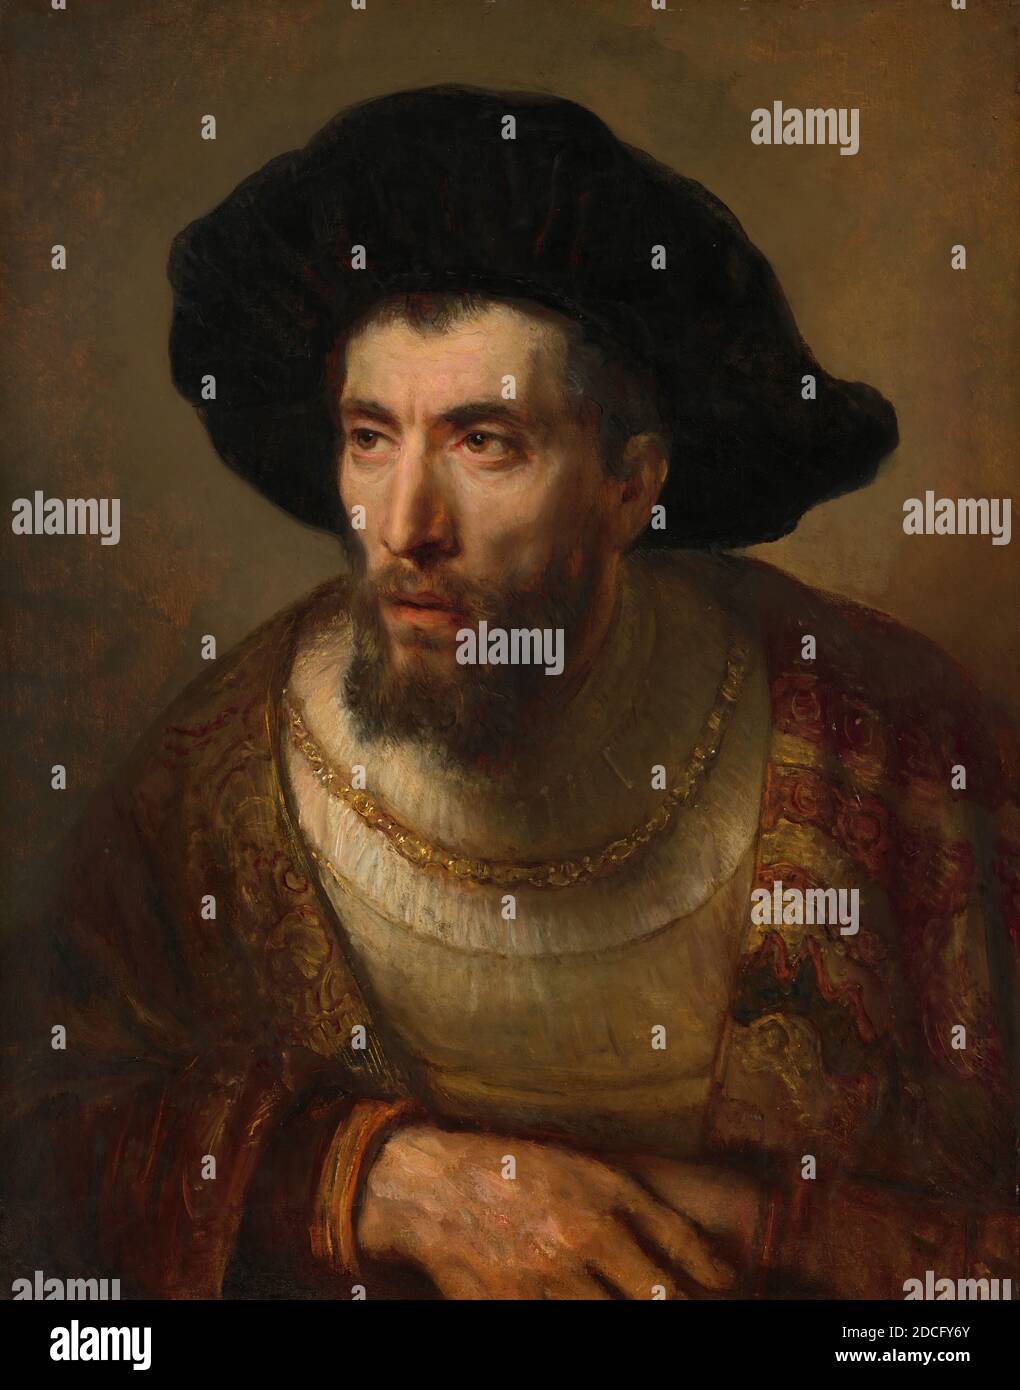 Olandese 17 ° secolo, (pittore), Rembrandt van Rijn, (artista collegato), olandese, 1606 - 1669, Willem Drost, (pittore), olandese, c.. 1630 - dopo il 1680, il filosofo, c.. 1653, olio su pannello, totale: 61.5 x 49.5 cm (24 3/16 x 19 1/2 pollici), incorniciato: 105.4 x 92.4 x 9.2 cm (41 1/2 x 36 3/8 x 3 5/8 pollici Foto Stock